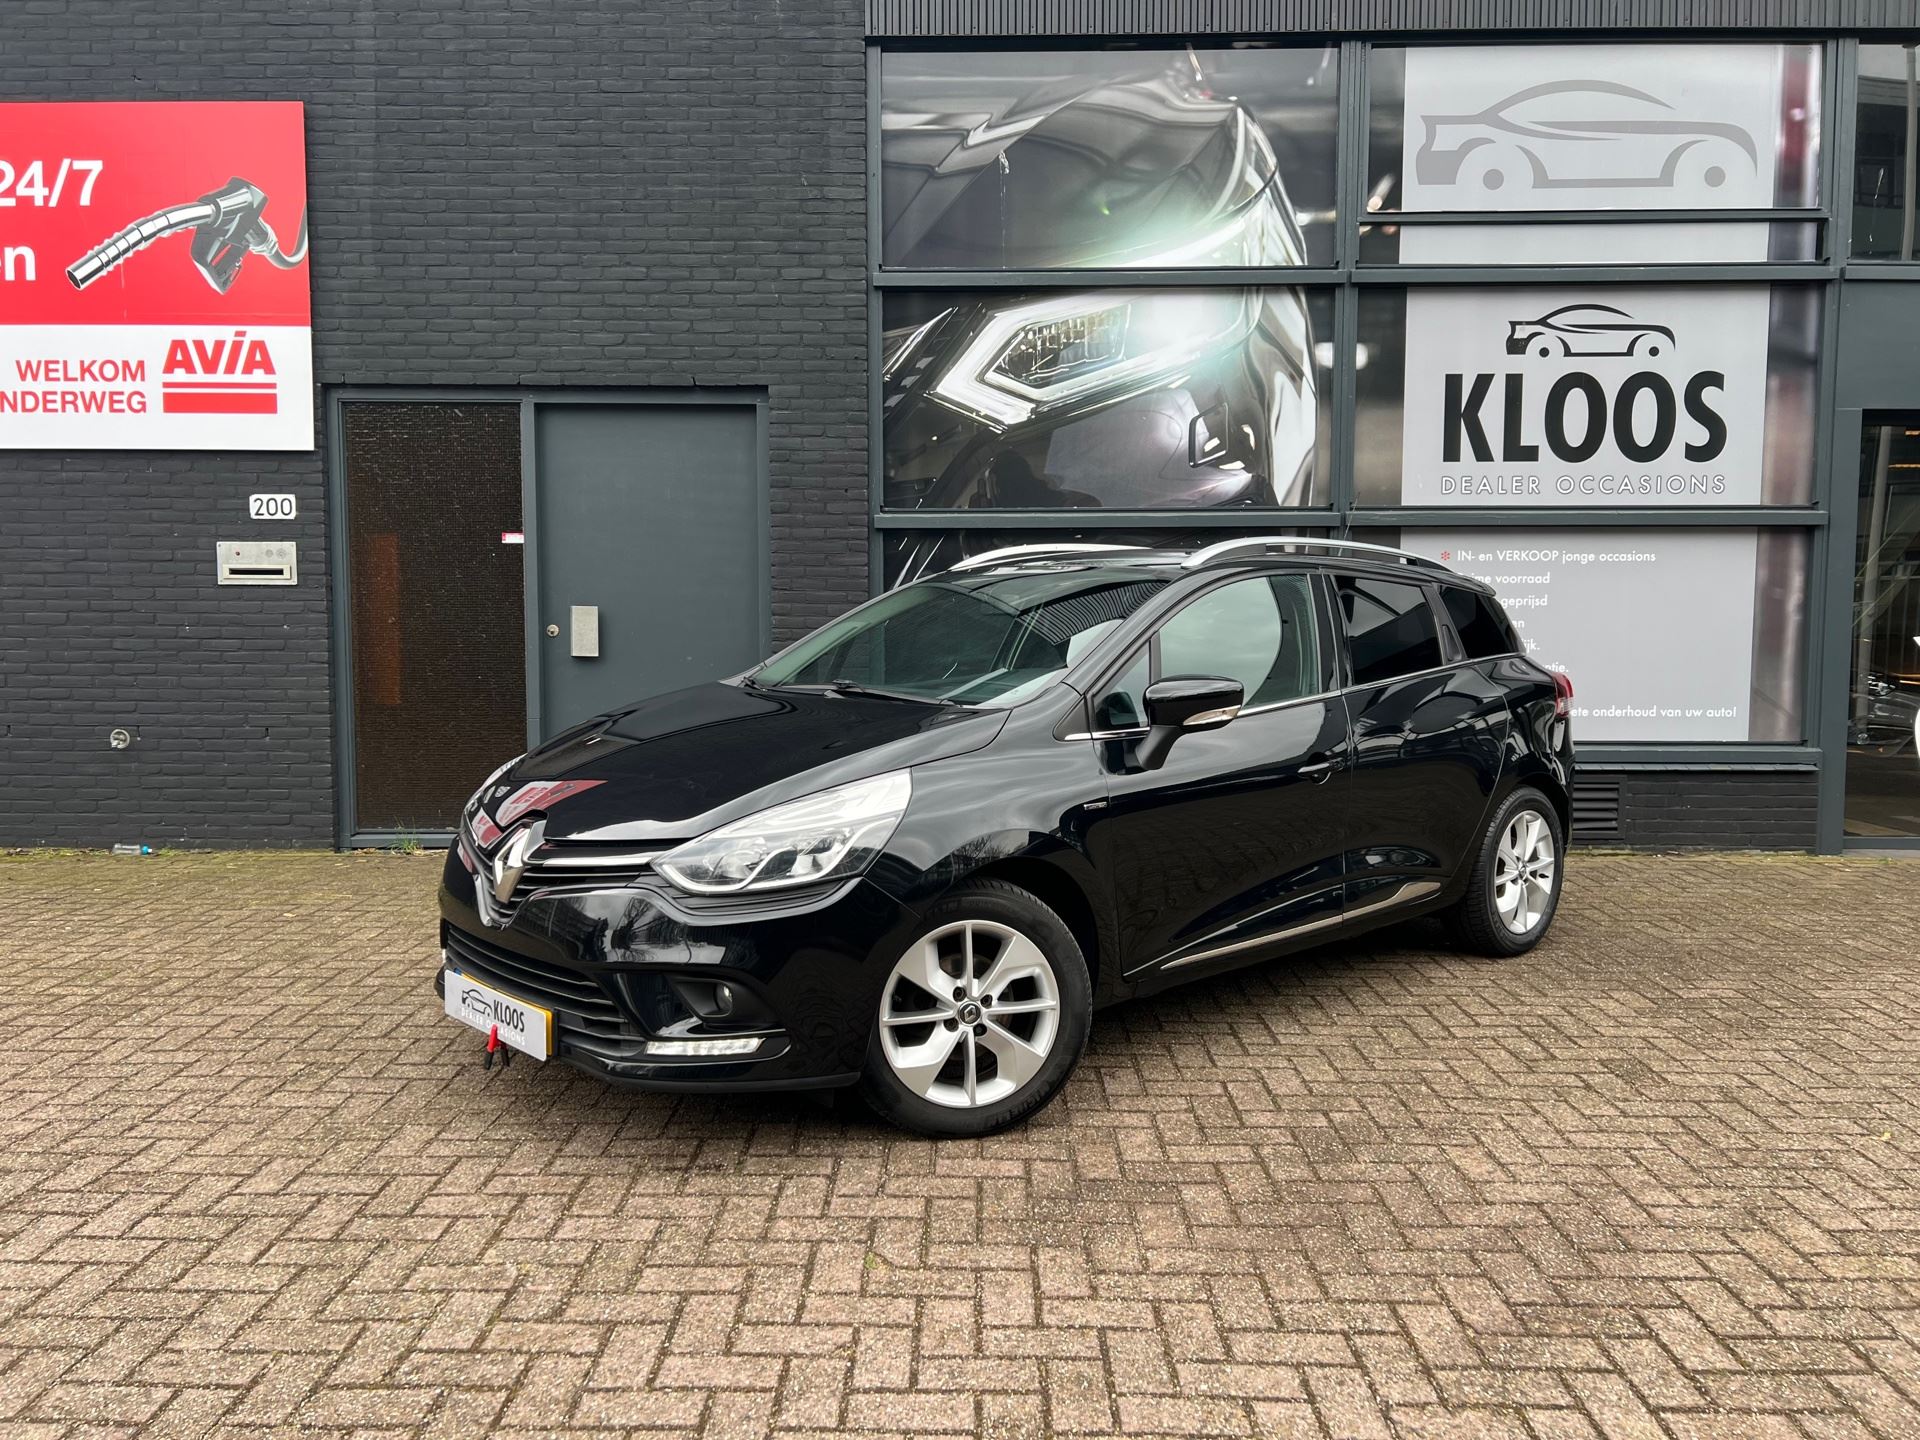 String string pijn kalligrafie Renault Clio Estate - 0.9 TCe Limited, 6 tot 12 maanden garantie Benzine  uit 2017 - www.kloosdealeroccasions.nl